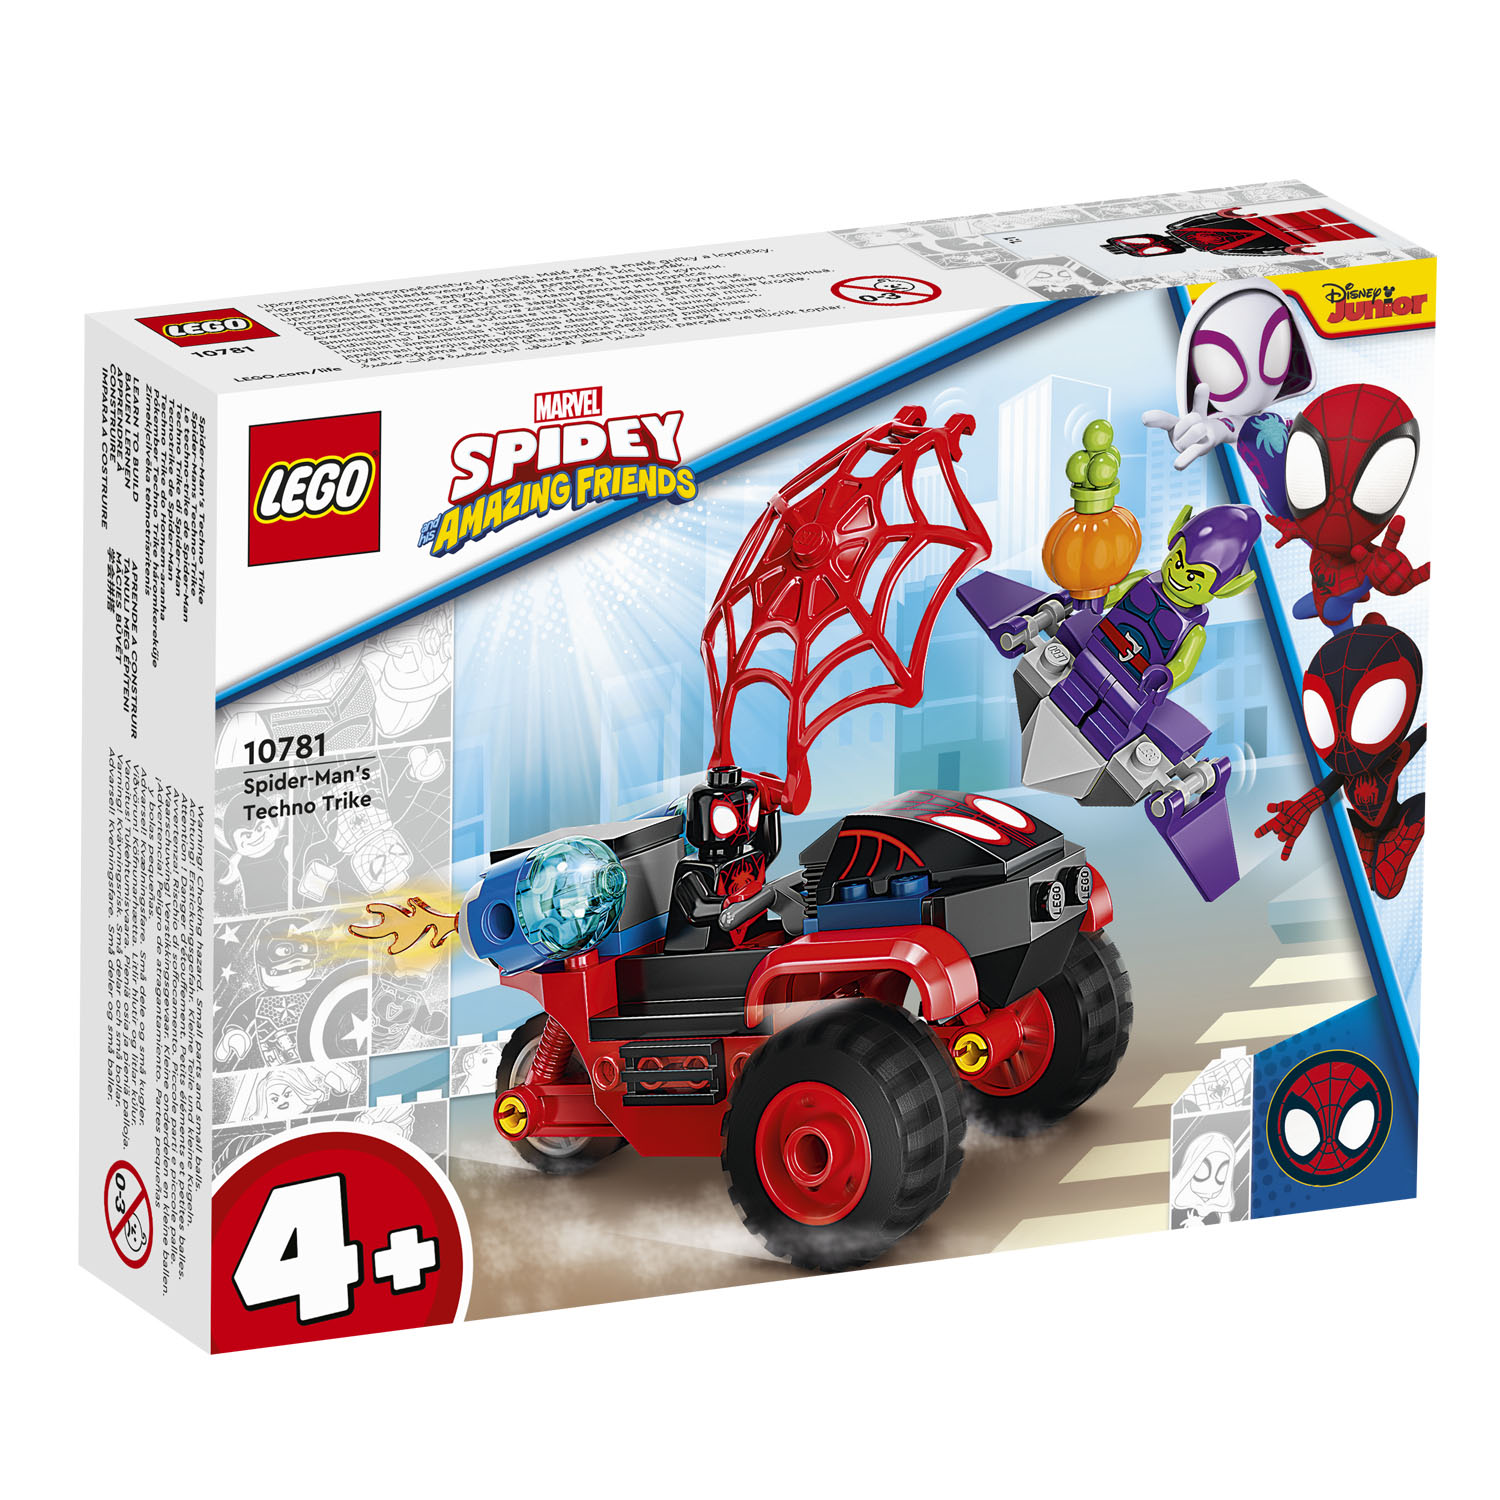 LEGO MARVEL 10781 SPIDER-MAN'S TECHNO TRIKE